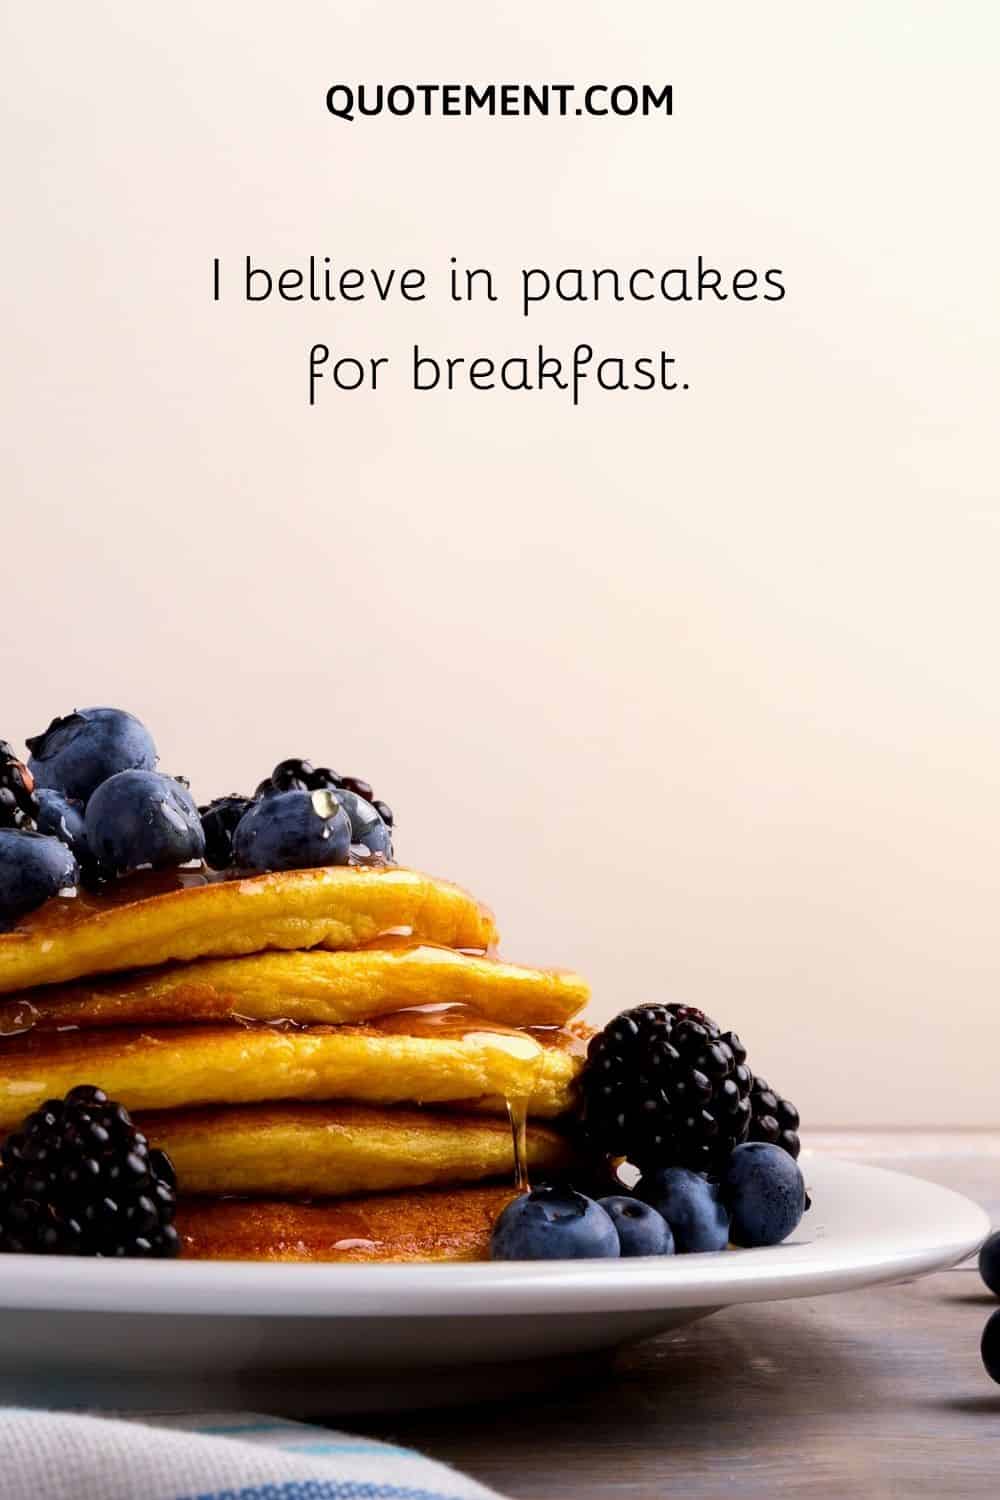 I believe in pancakes for breakfast